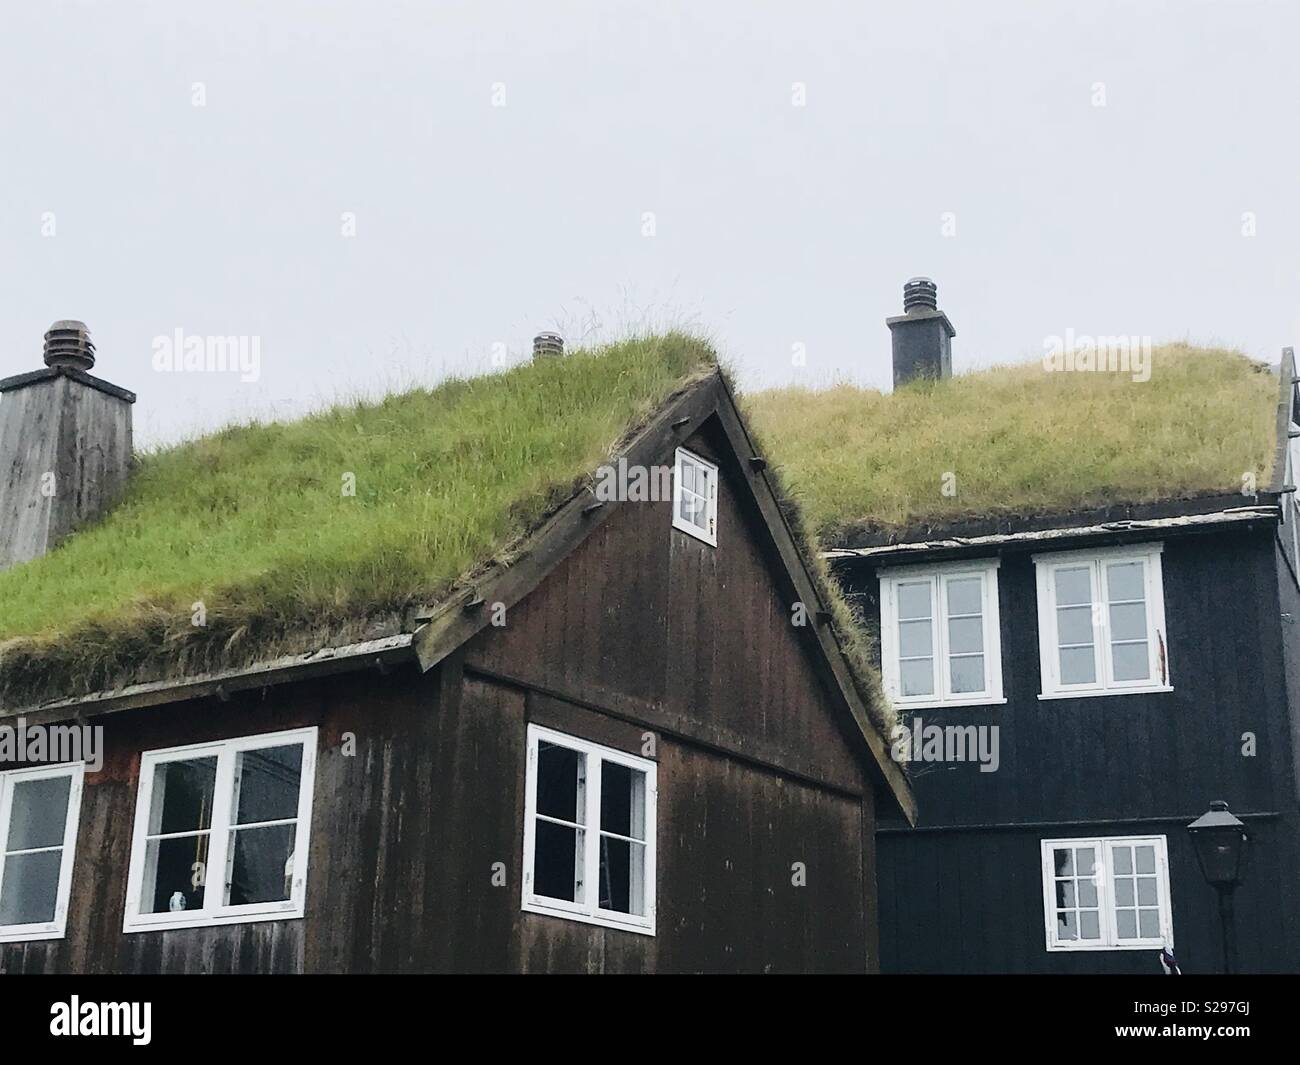 Gras-roofed Häuser in Tórshavn, Färöer Inseln Stockfoto